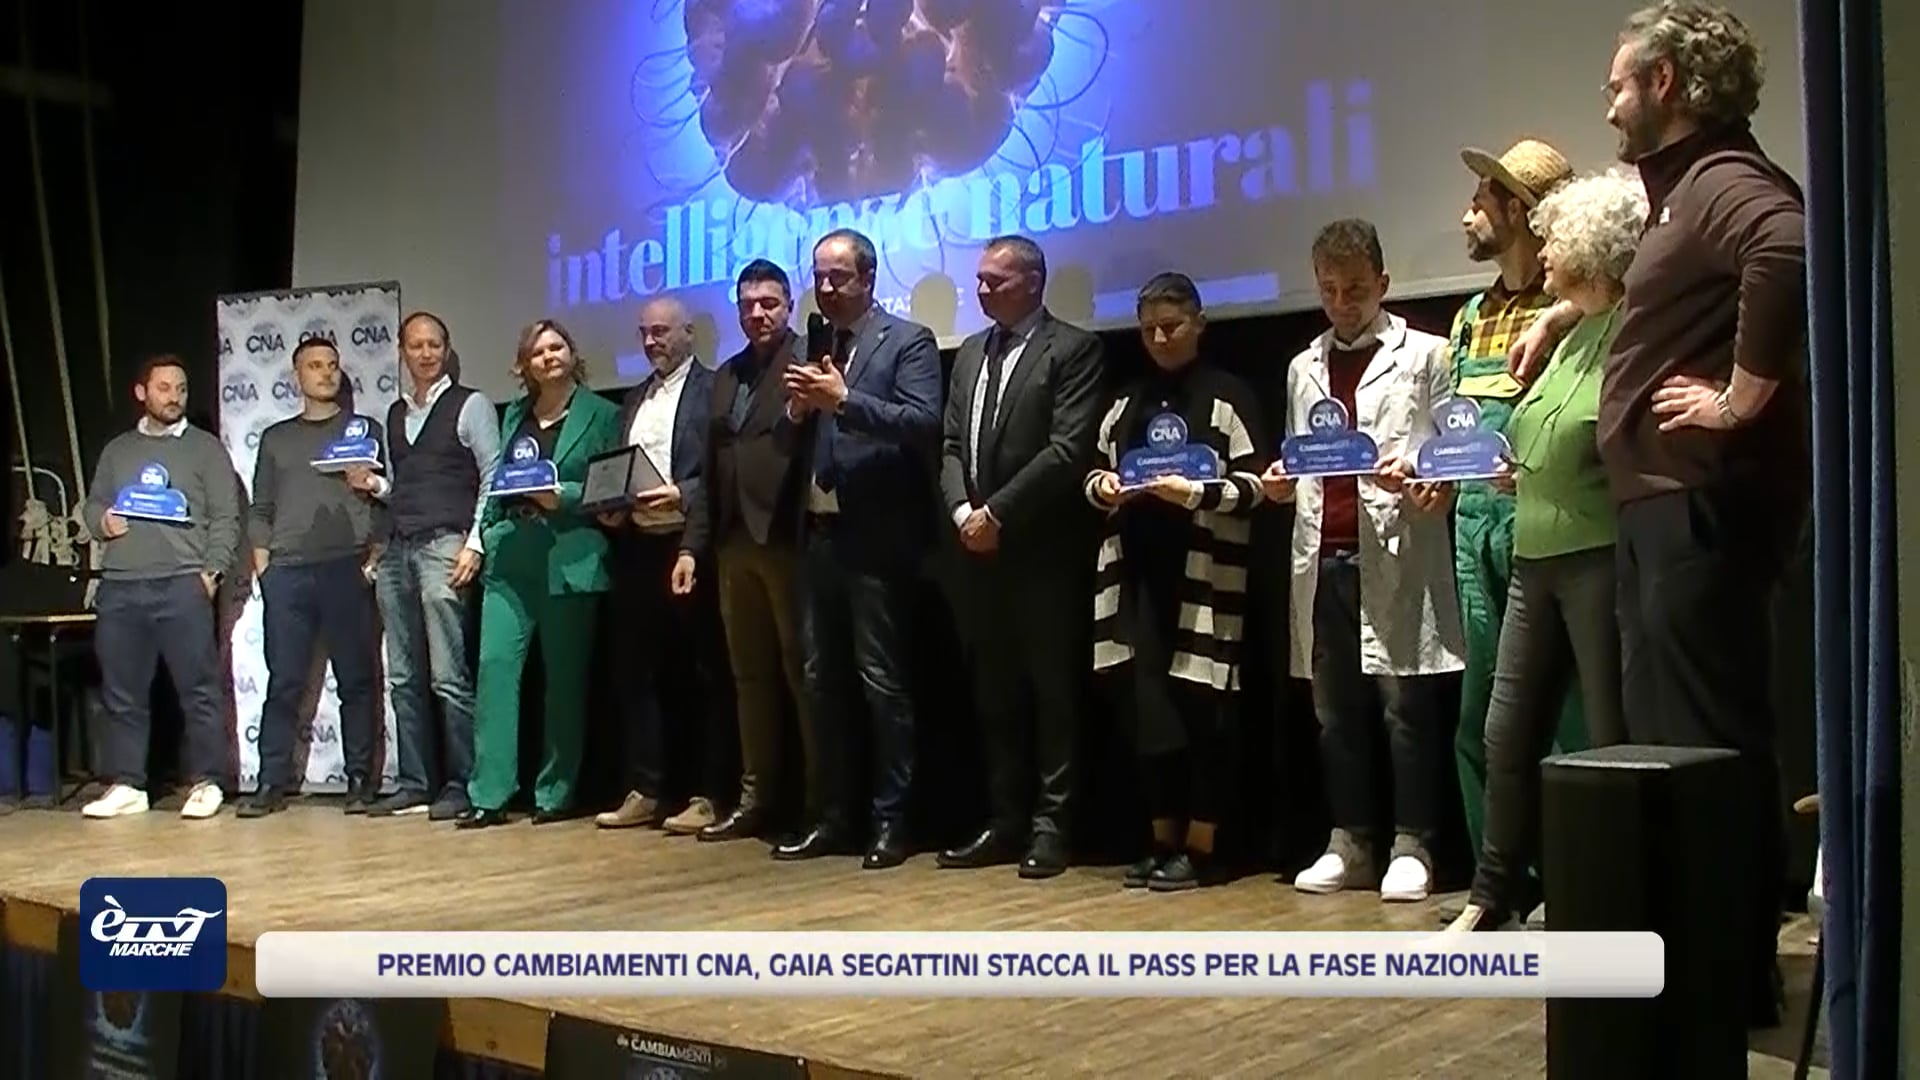 Premio Cambiamenti CNA, Gaia Segattini stacca il pass per la fase nazionale - VIDEO